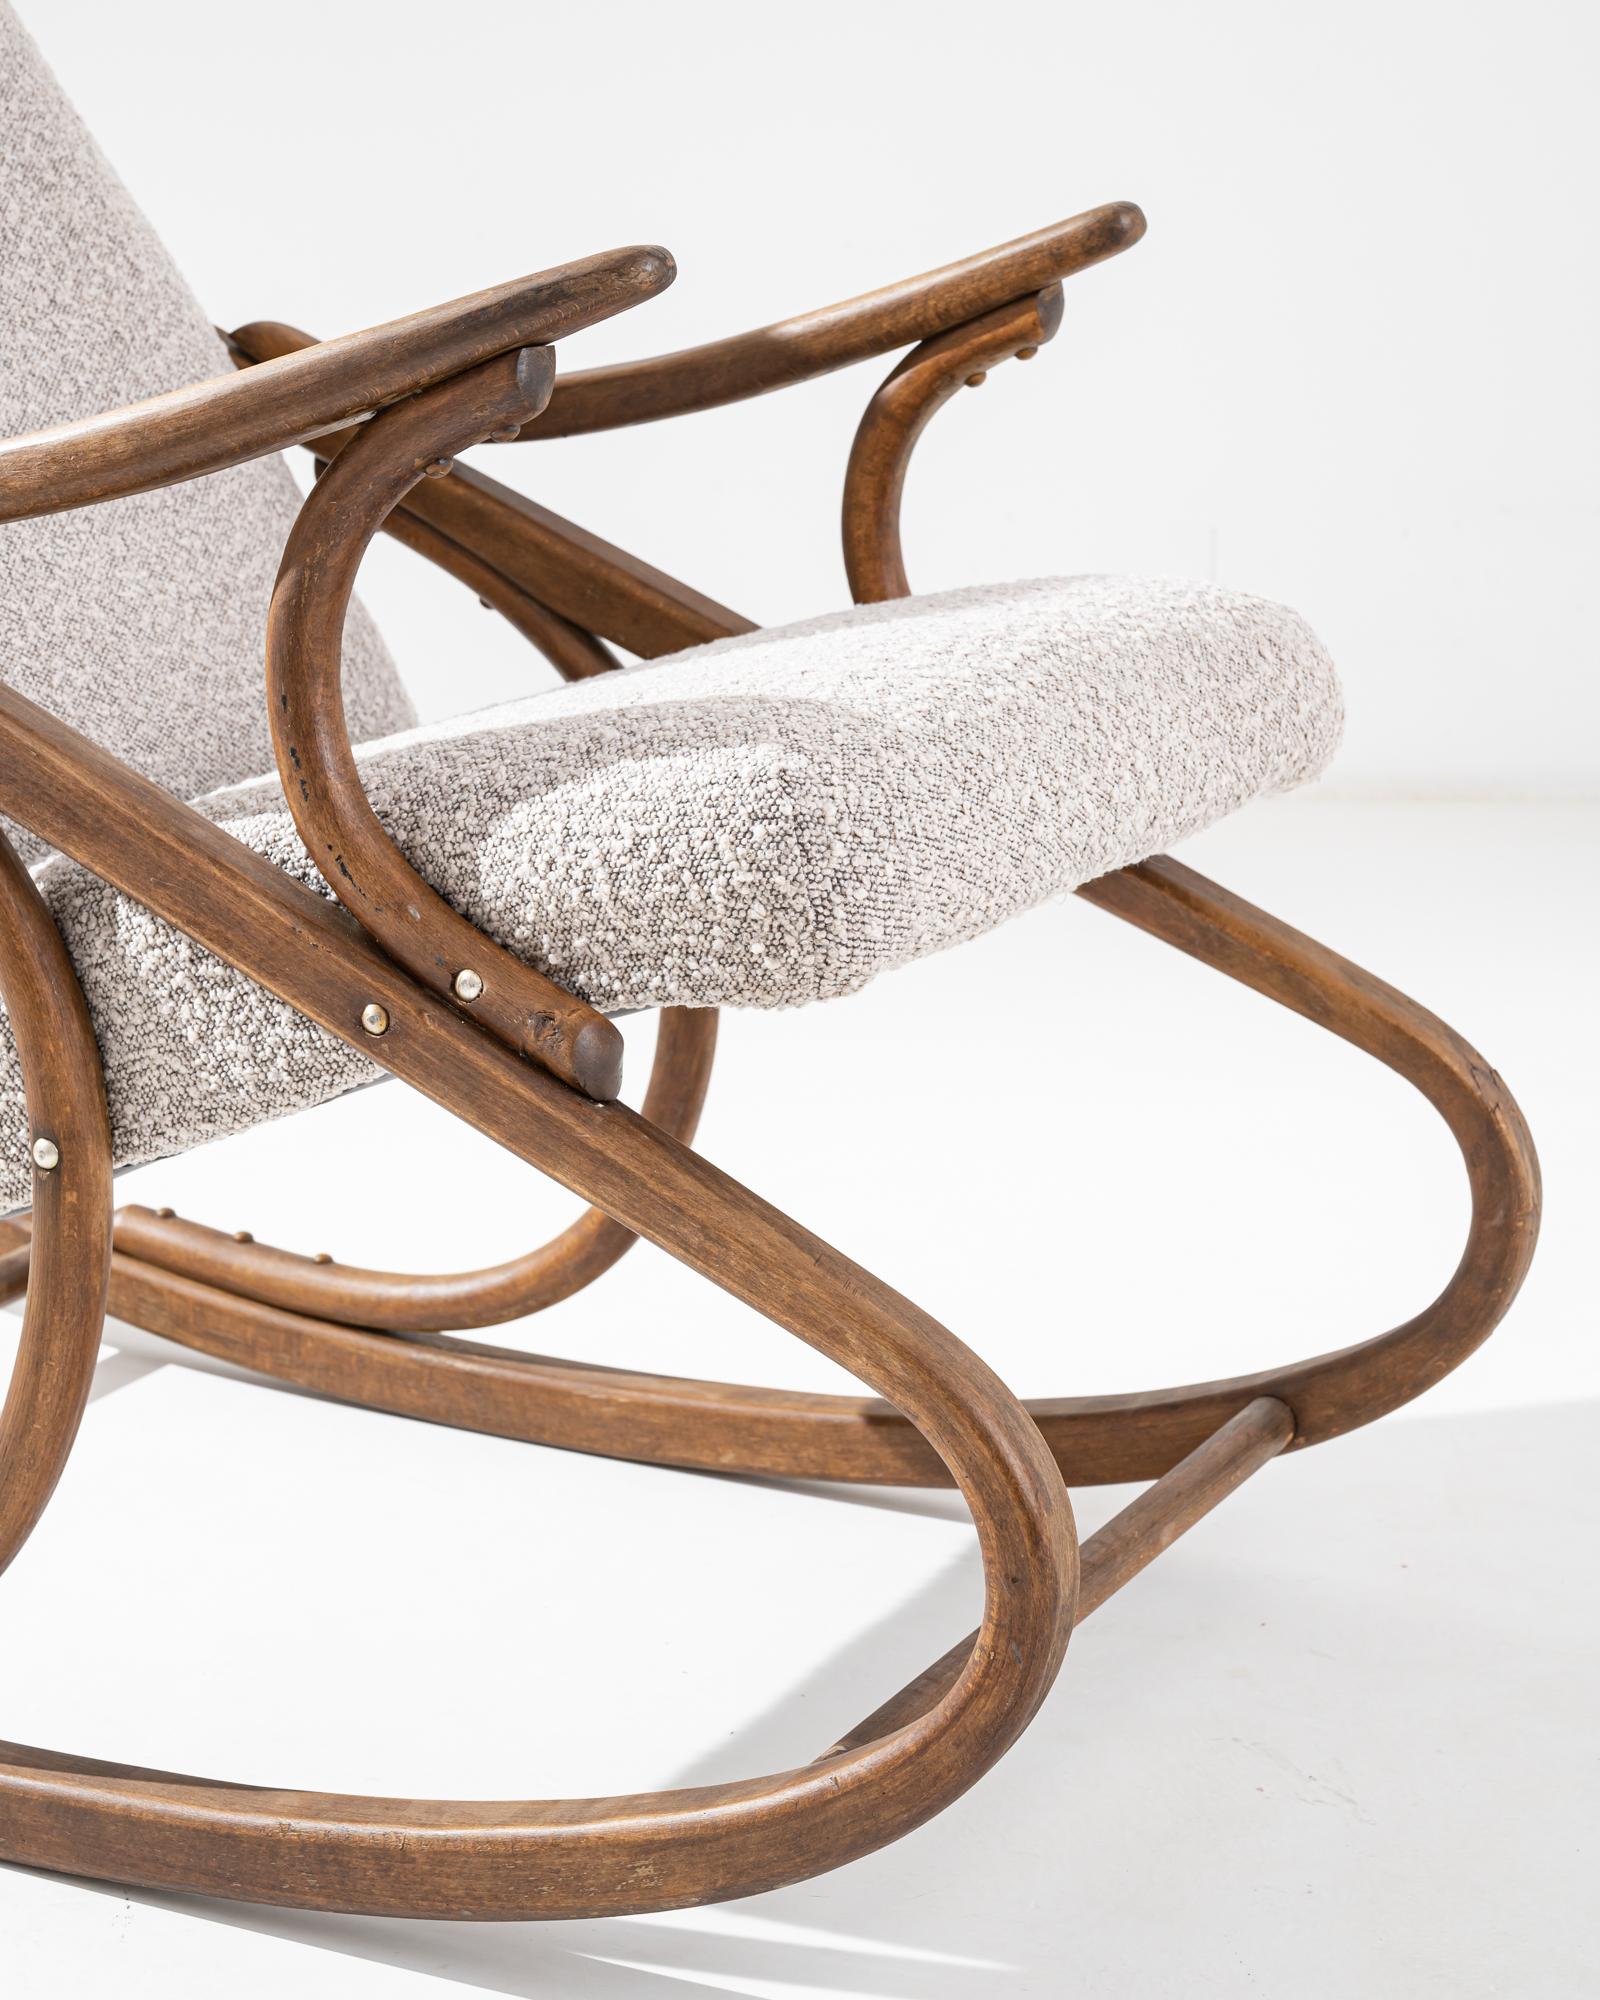 Cette chaise vintage en bois a été fabriquée en République tchèque, vers 1960. Un fauteuil à bascule sculpté en bois courbé, cette pièce classique a été fabriquée par TON, une entreprise de meubles célèbre en Europe pour sa technique de bois étuvé